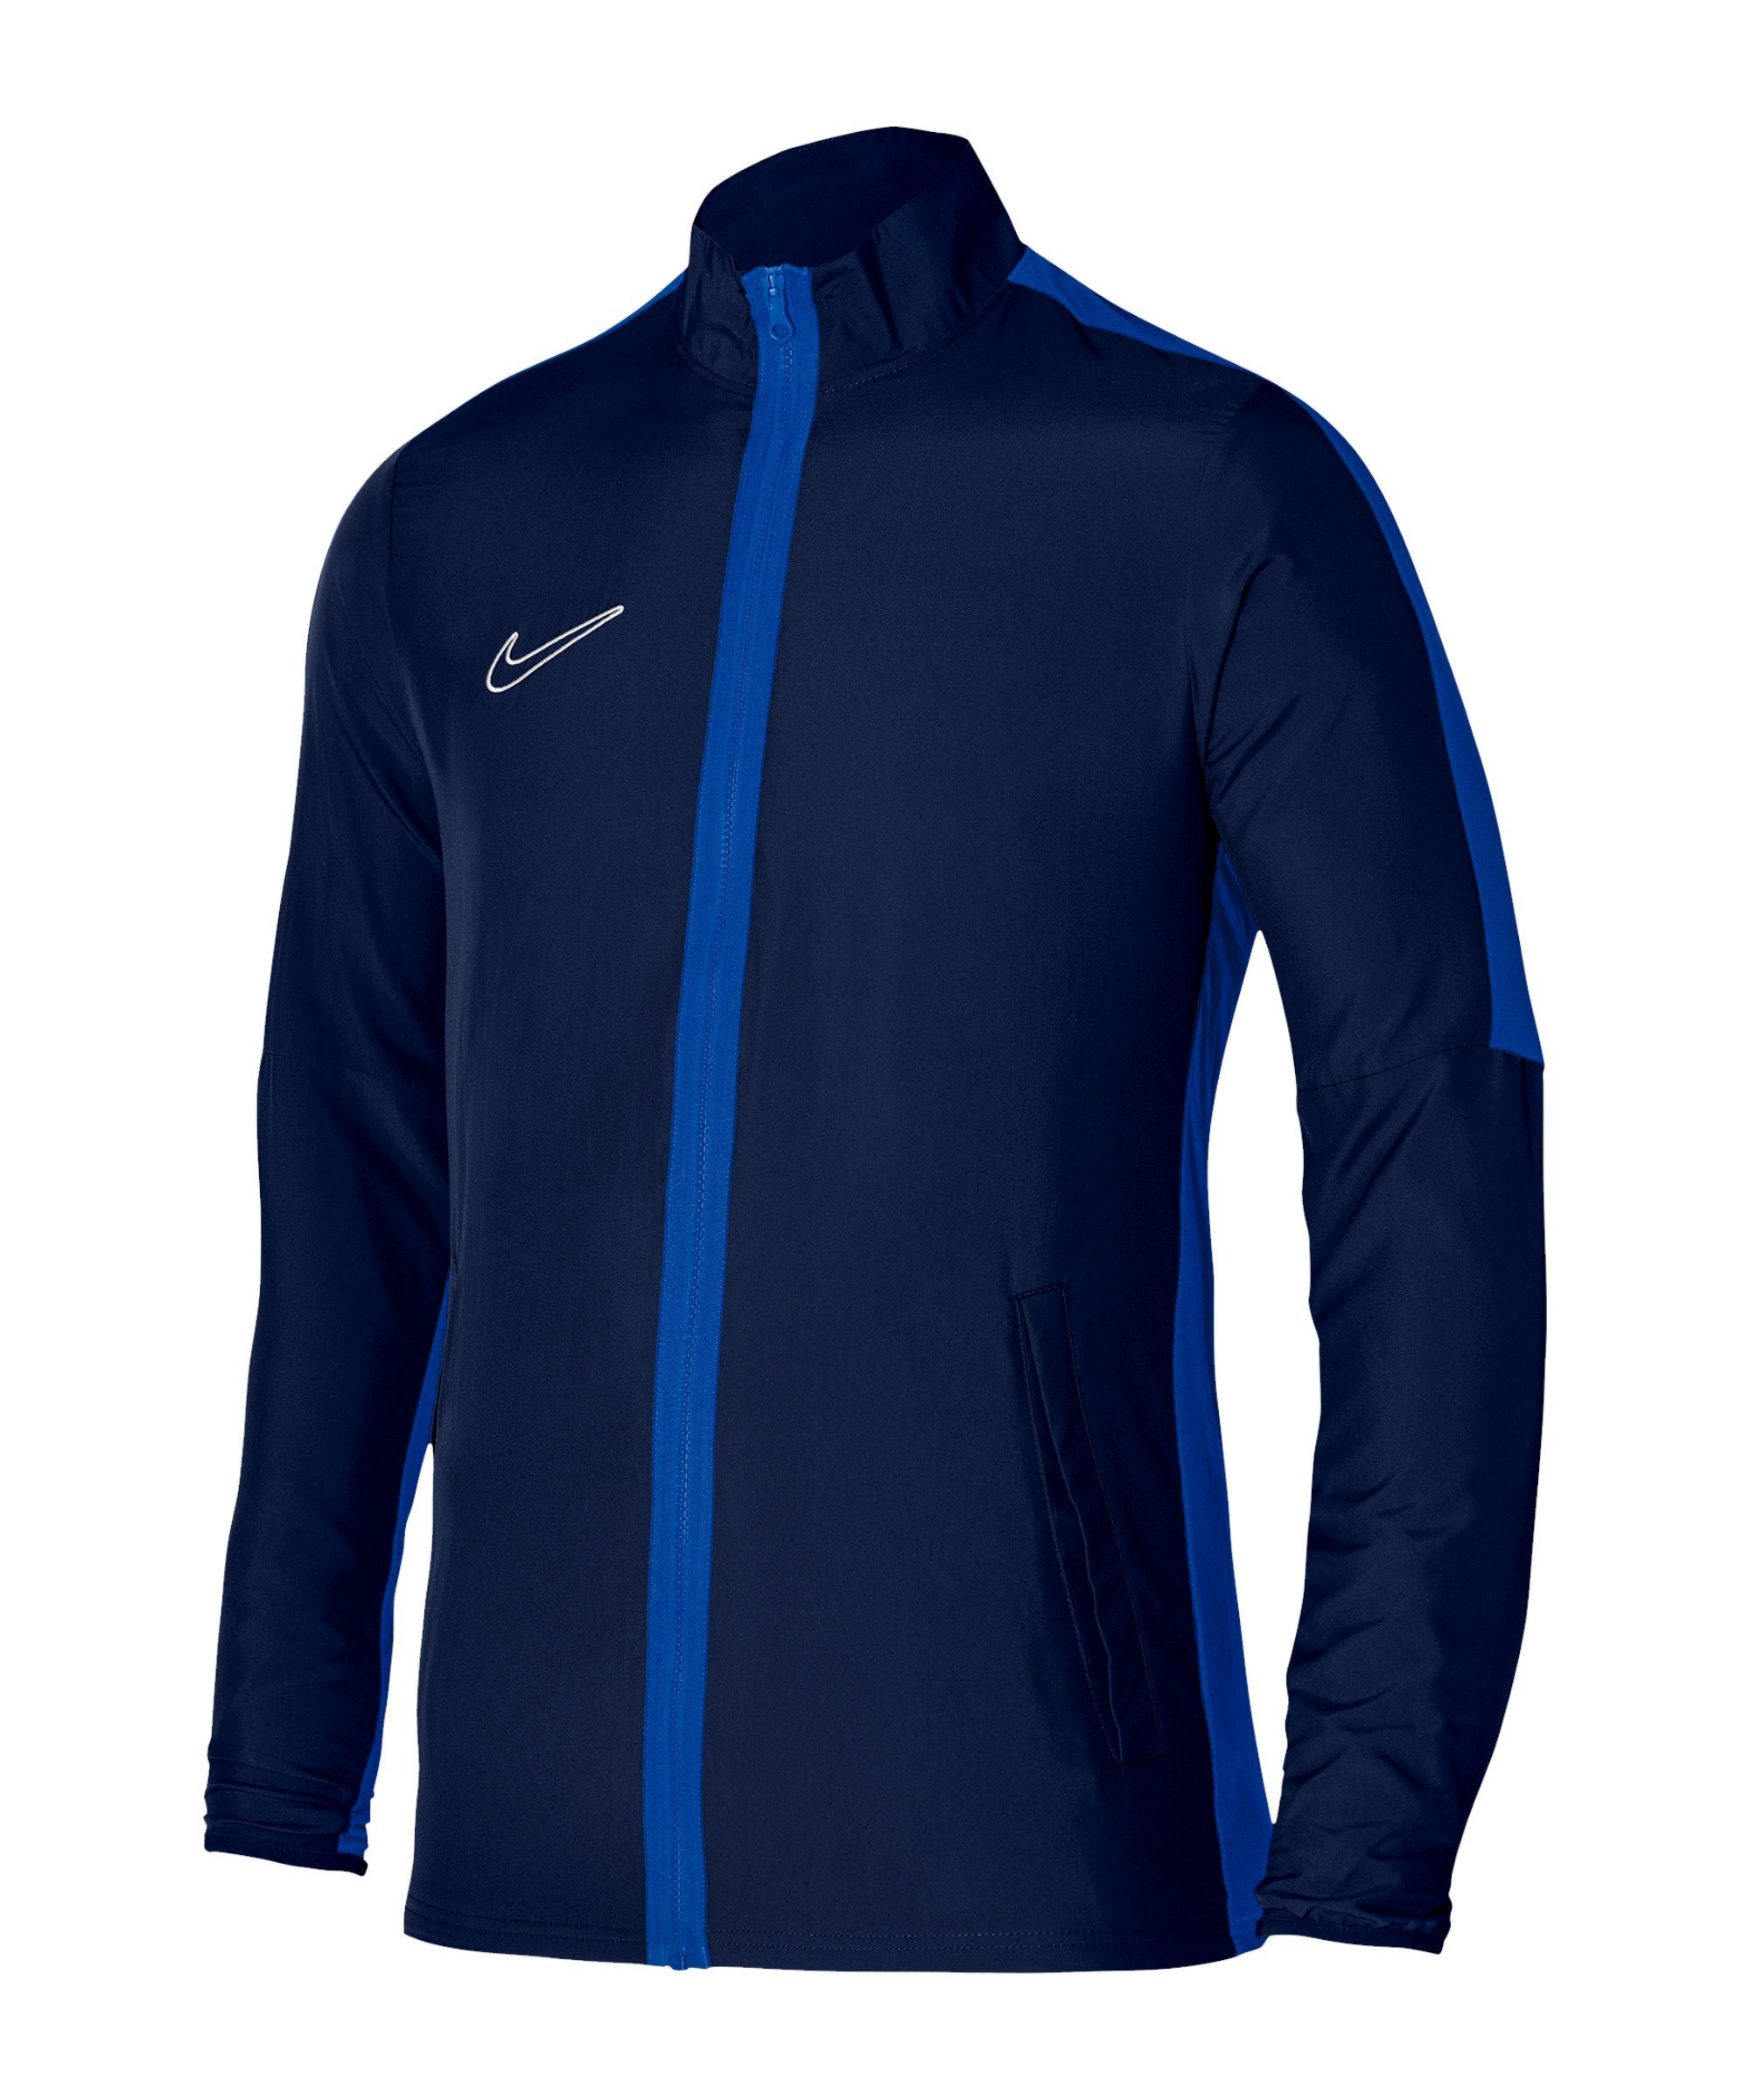 Academy Sweatjacke Nike 23 blaublauweiss Woven Trainingsjacke